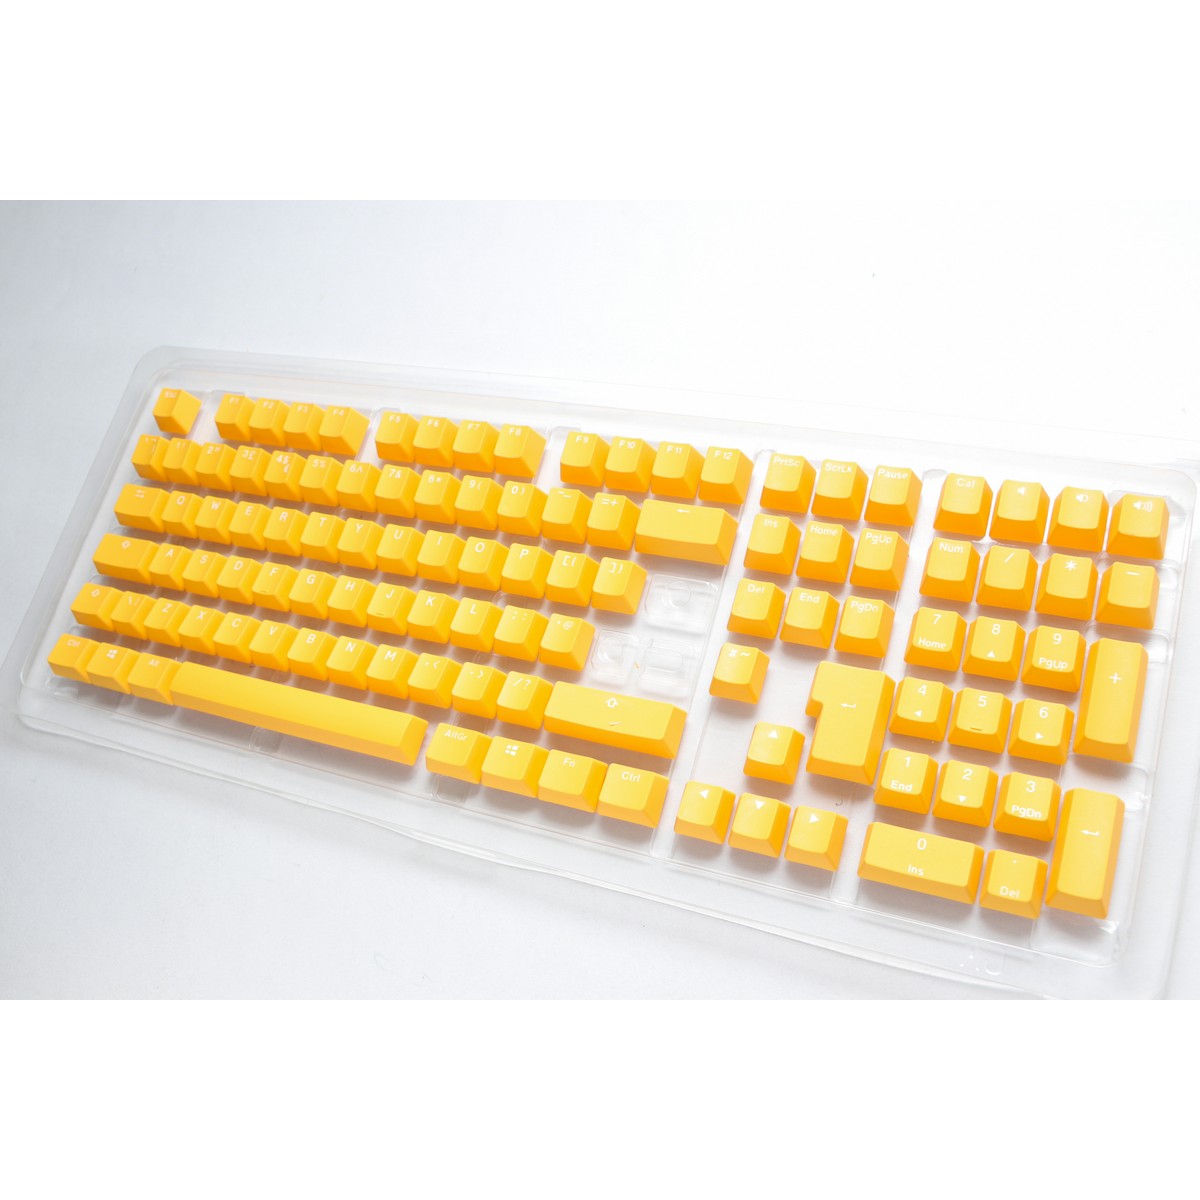 Ducky - Ducky Yellow PBT Seamless Double Shot UK Keycap Set (DKSA109-UKPDYDYYWO1)